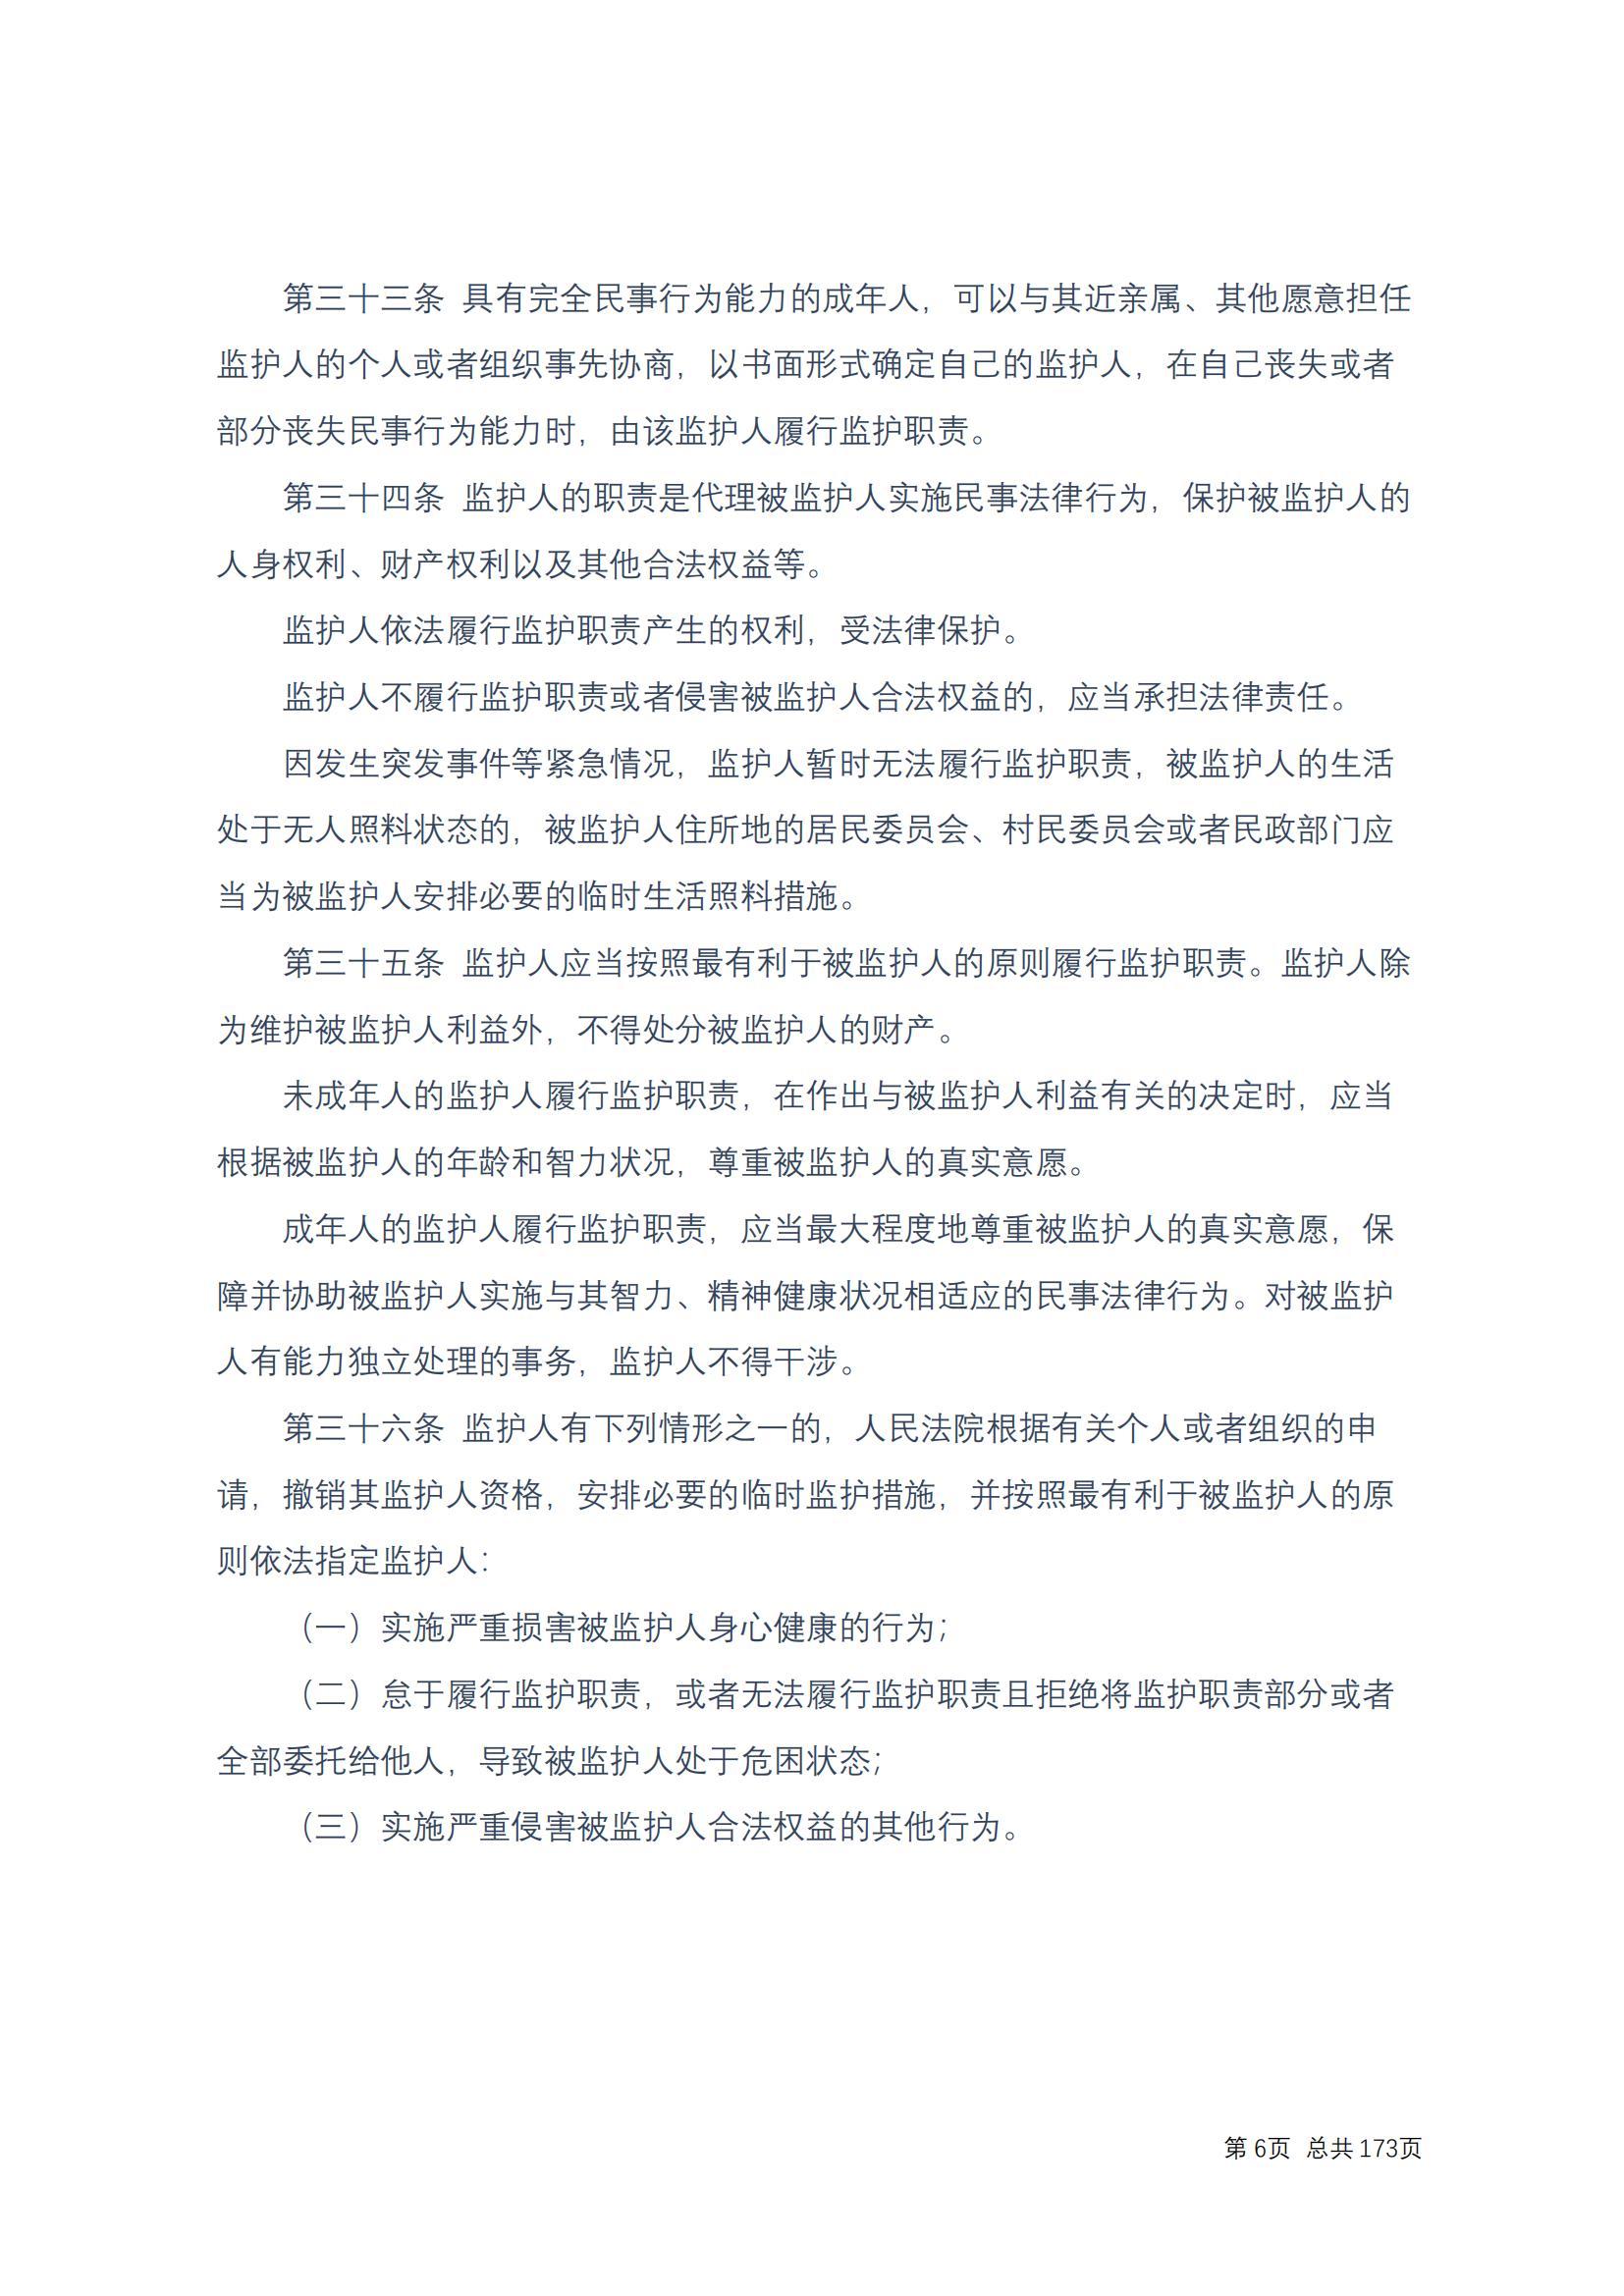 中华人民共和国民法典 修改过_05